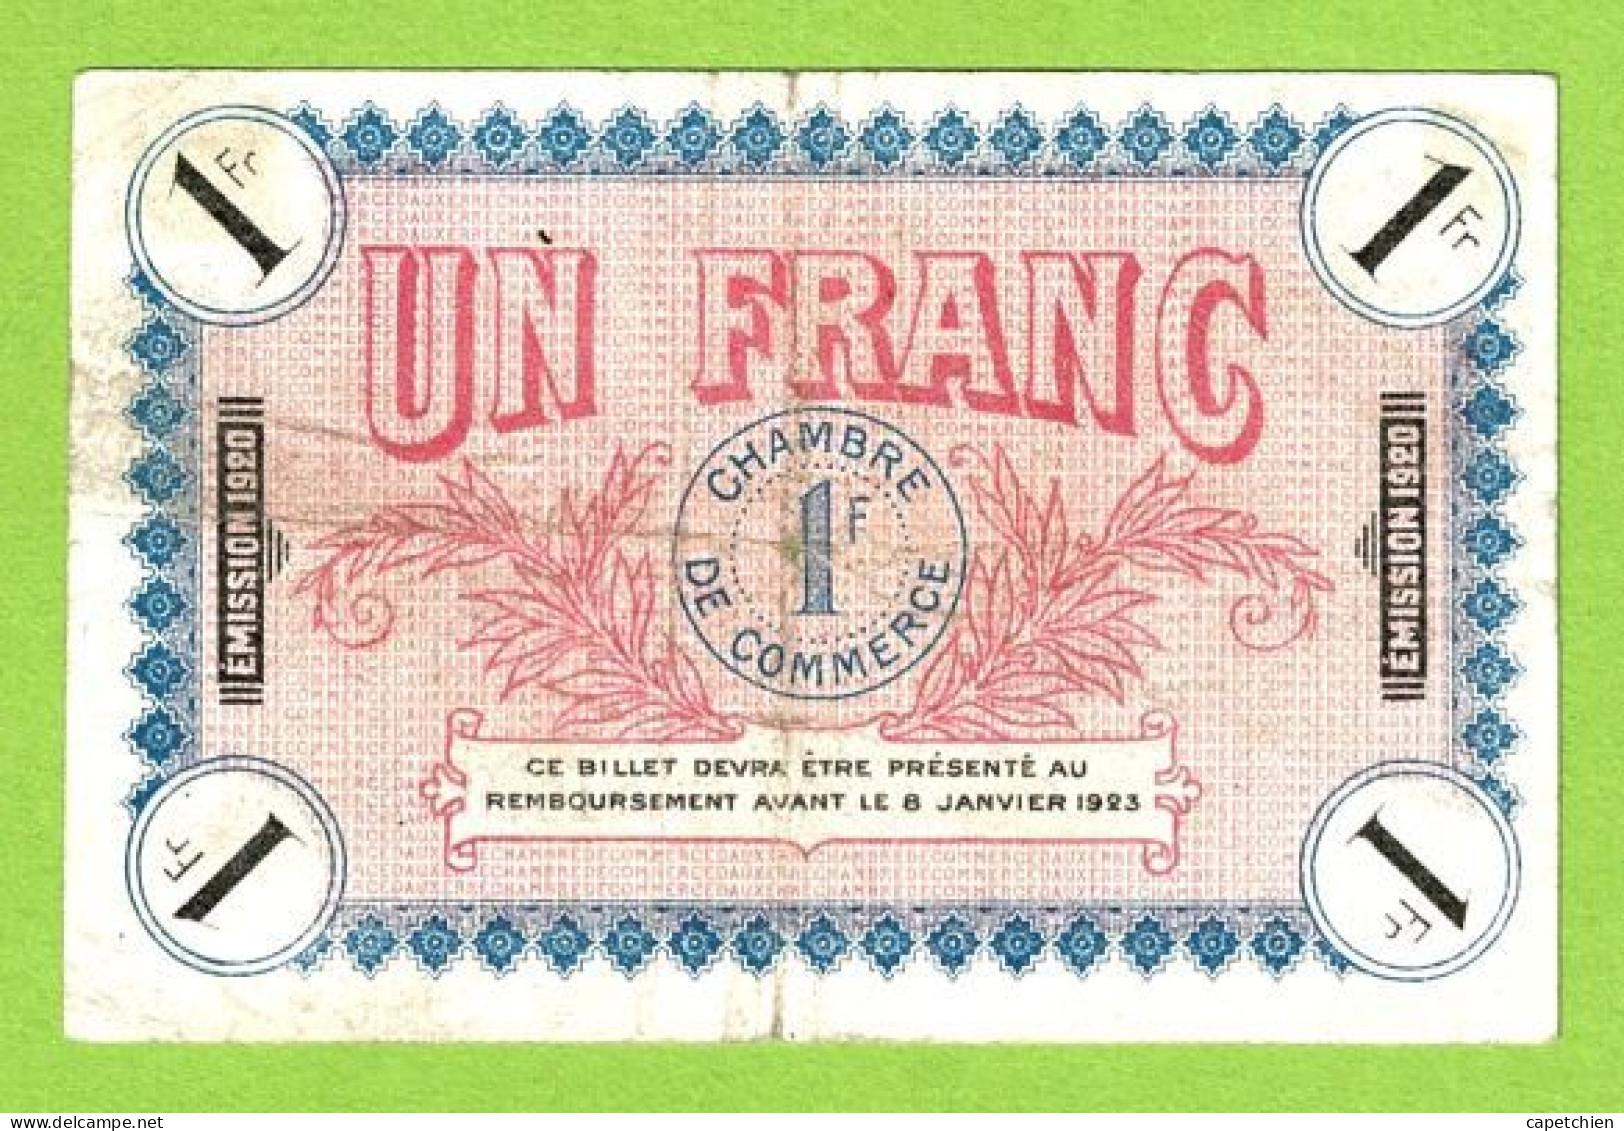 FRANCE / AUXERRE / 1 FRANC / 8 Janvier 1920 / N° 017948 / SERIE  150 - Chambre De Commerce